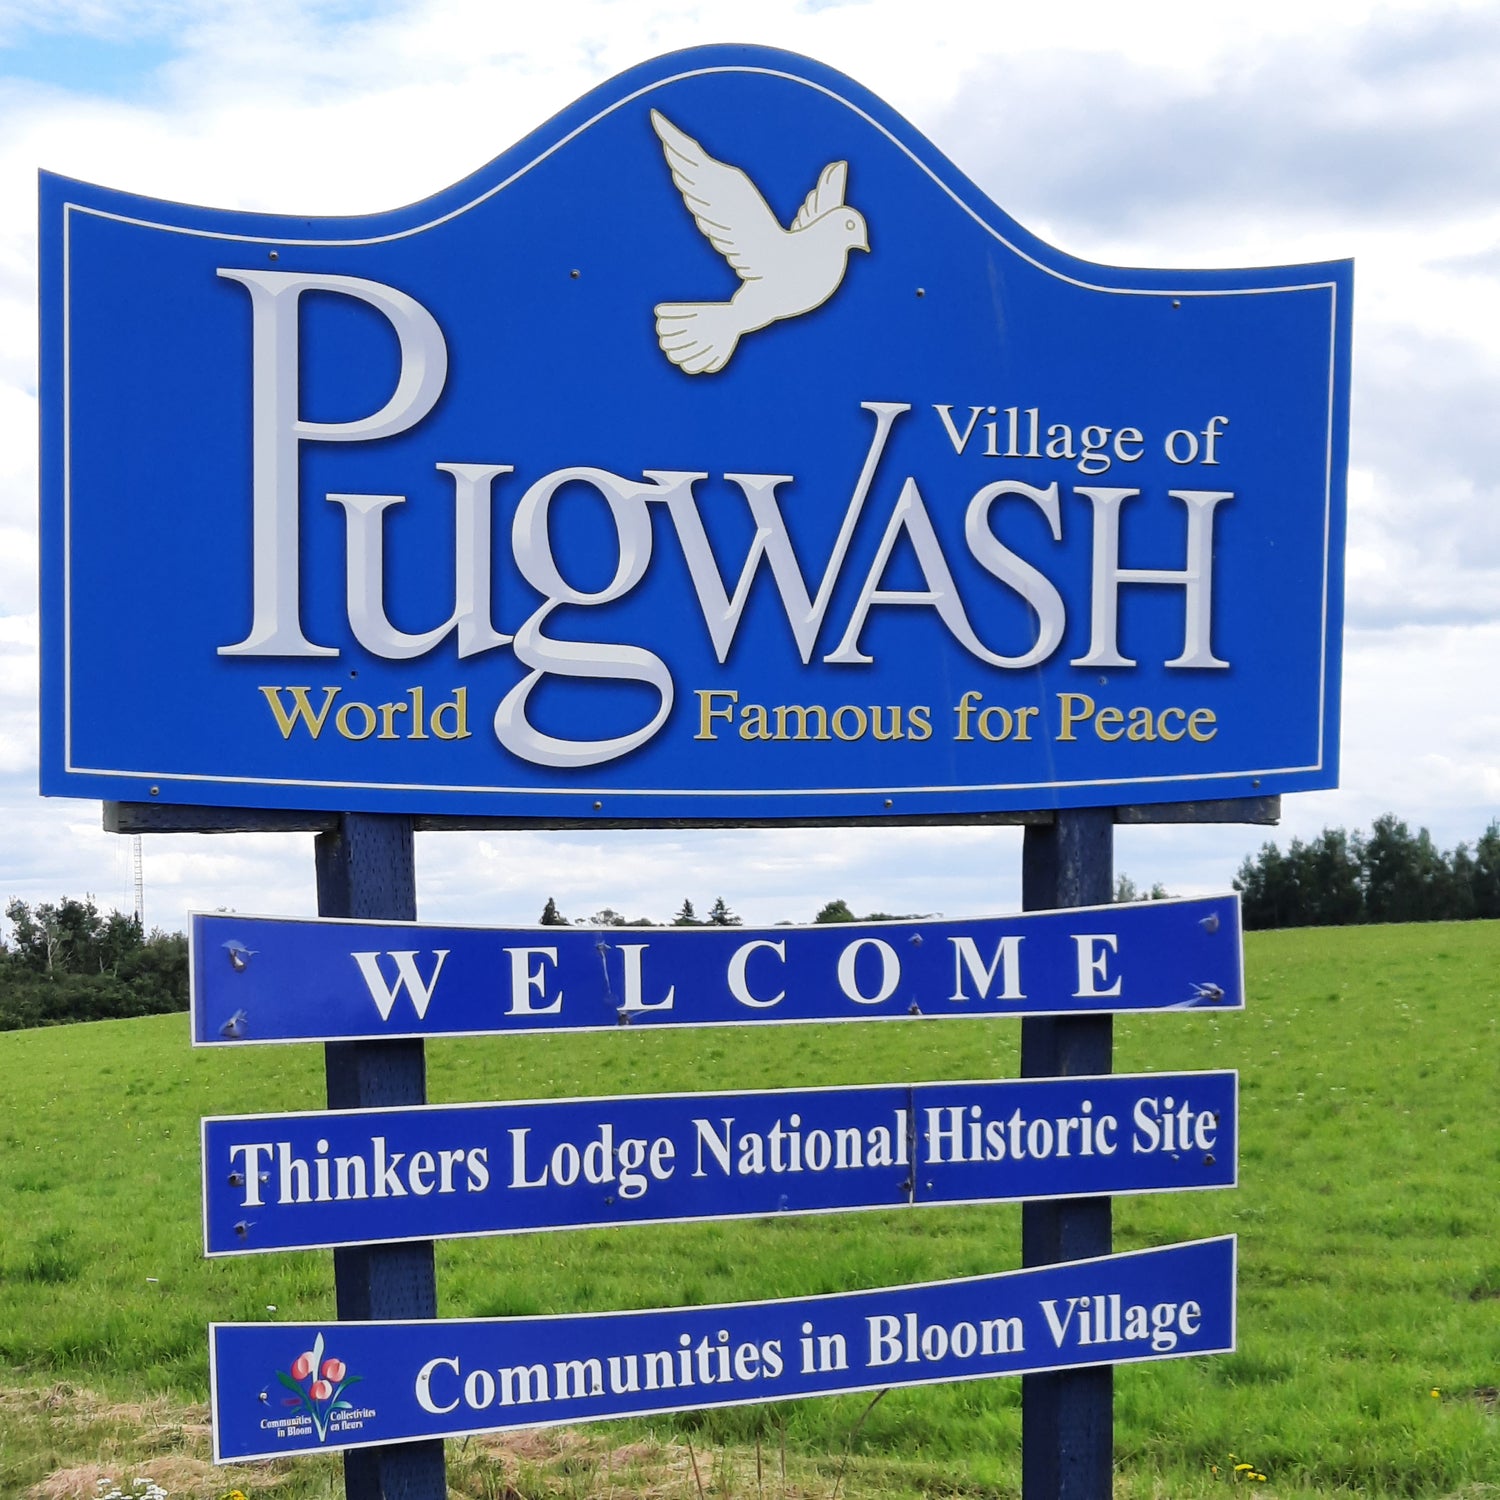 En savoir plus sur Pugwash